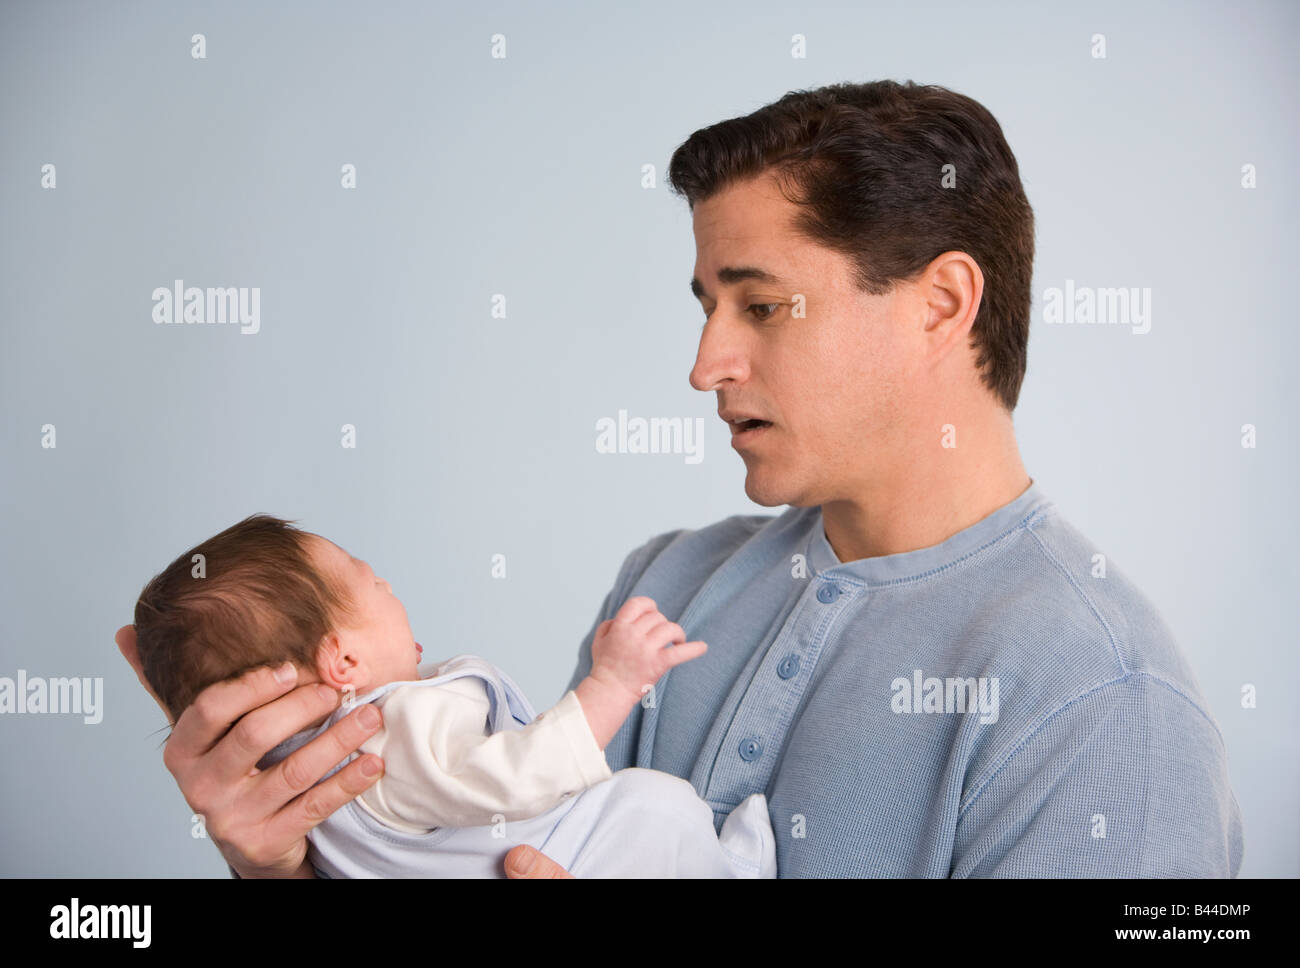 Hispanic father holding baby Stock Photo